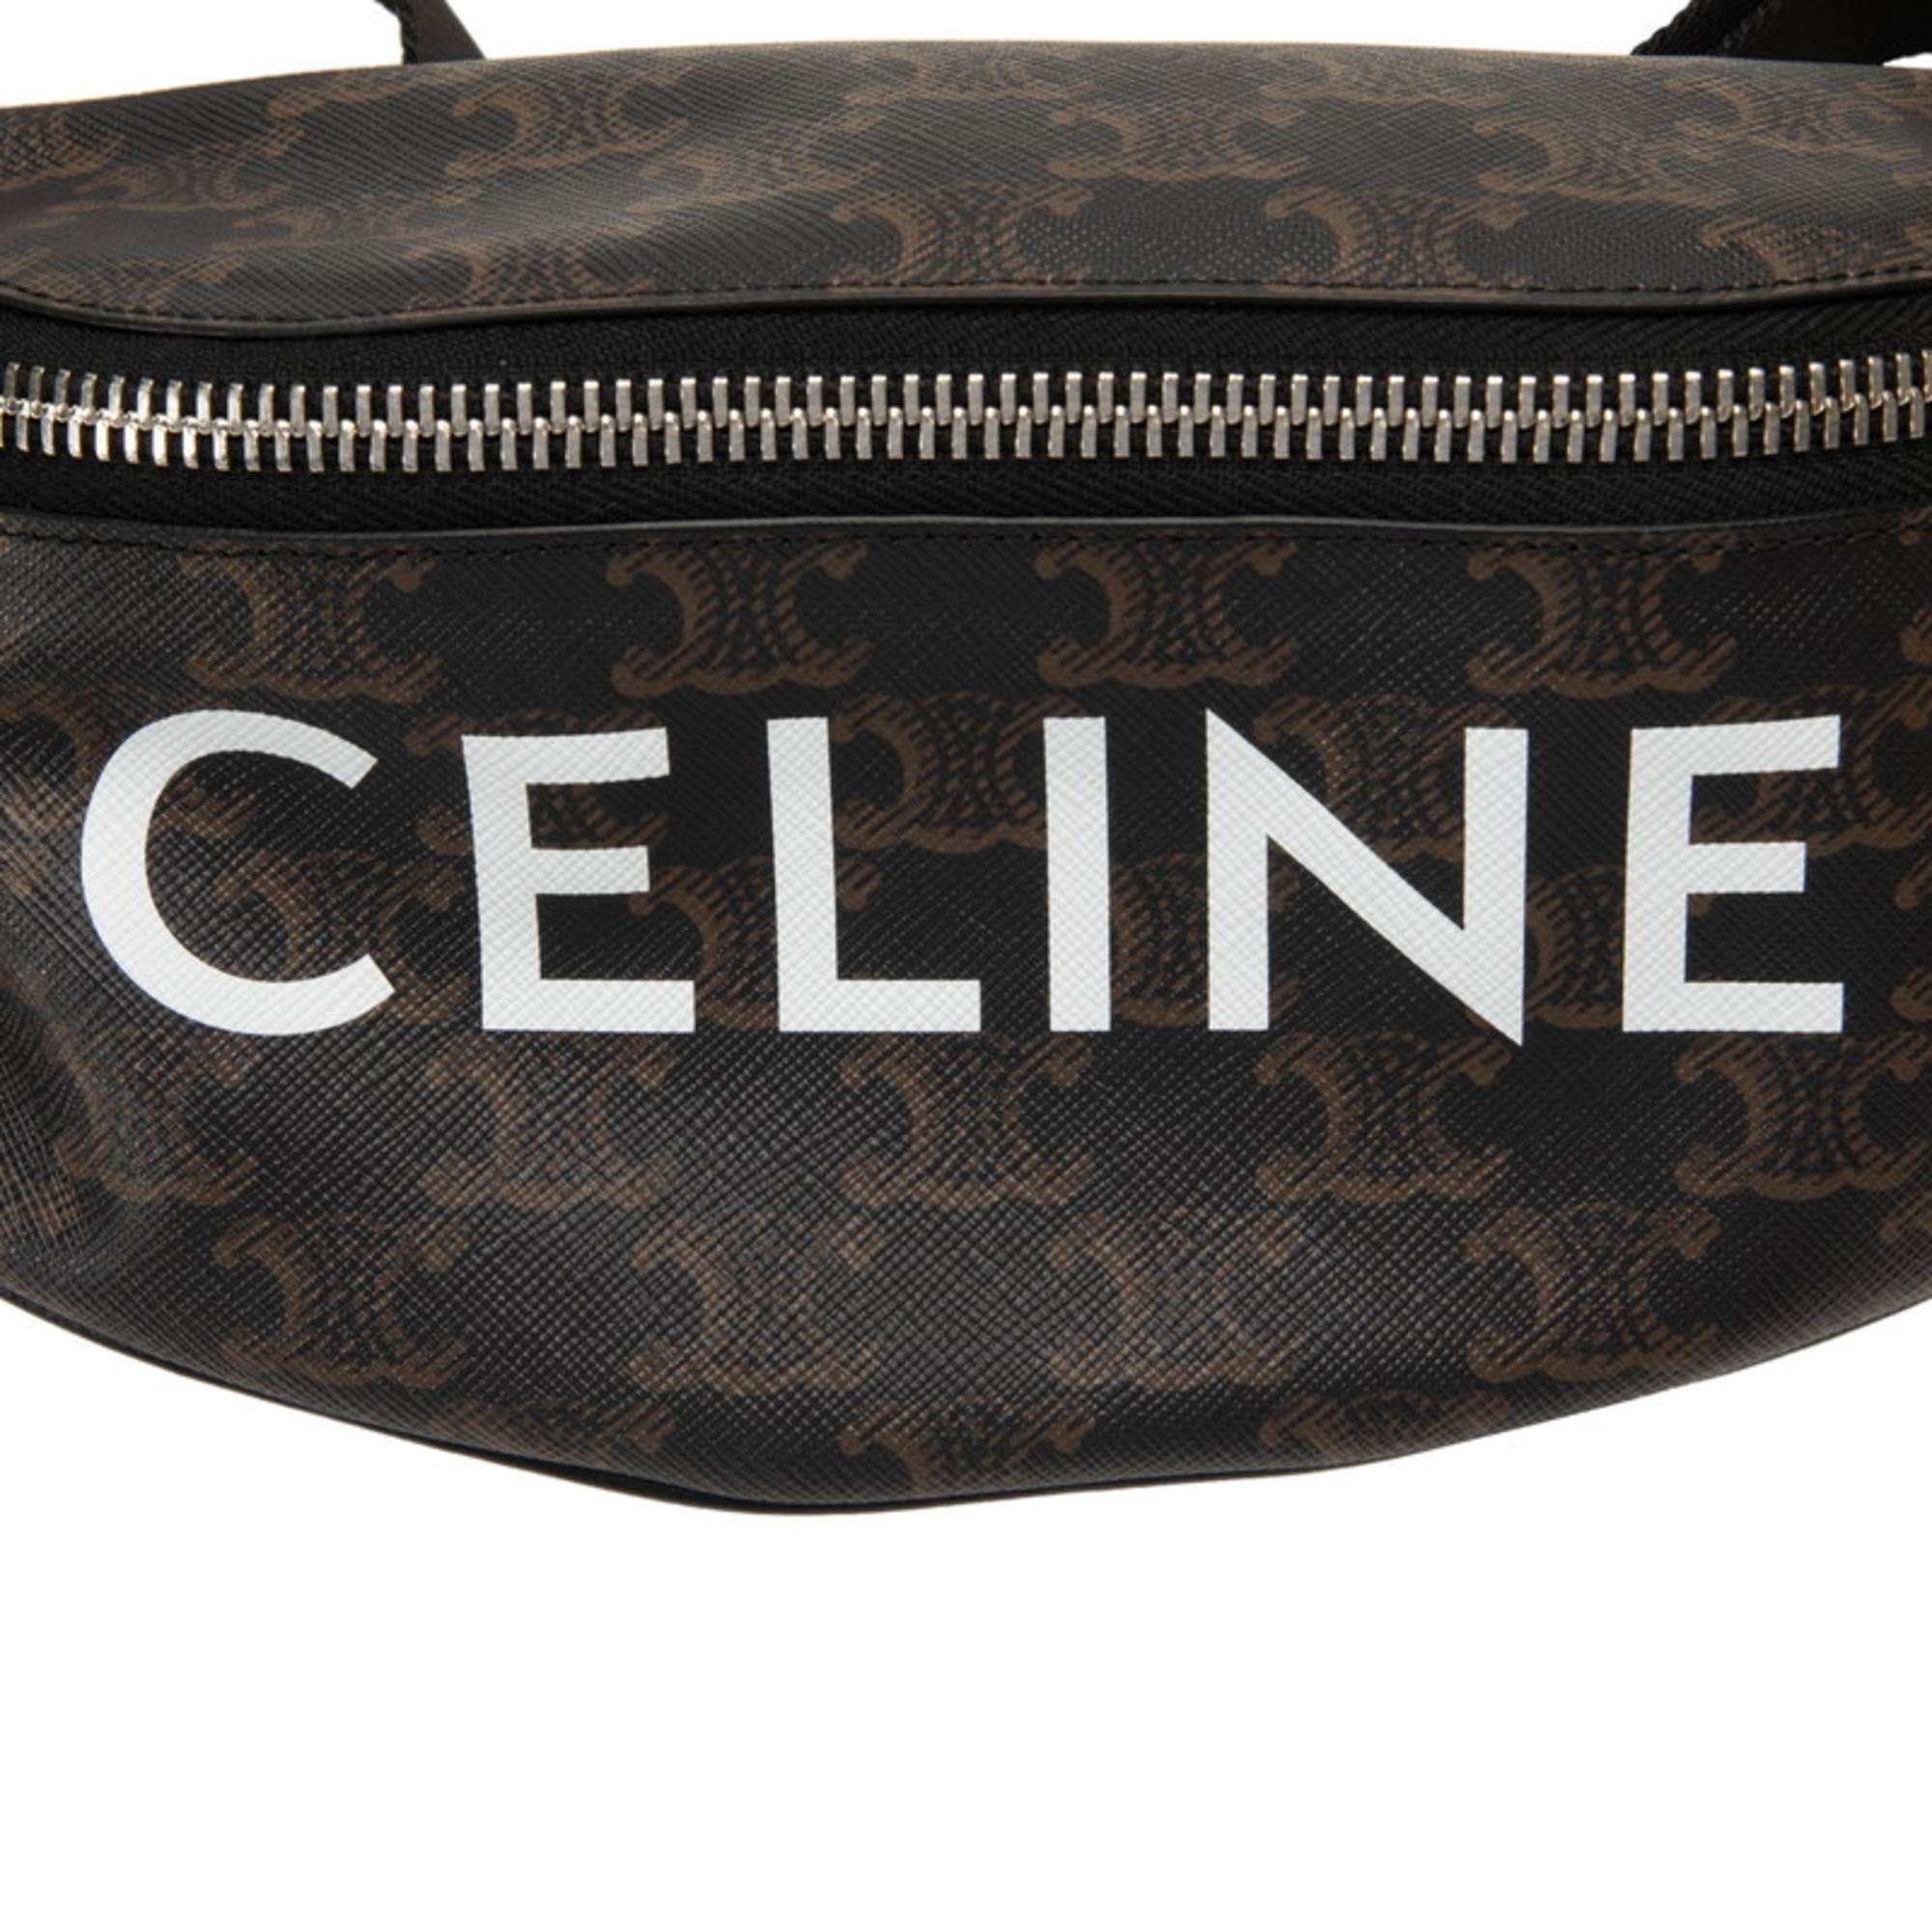 Celine Triomphe Waist Bag Body 195972 Brown PVC Nylon Women's CELINE